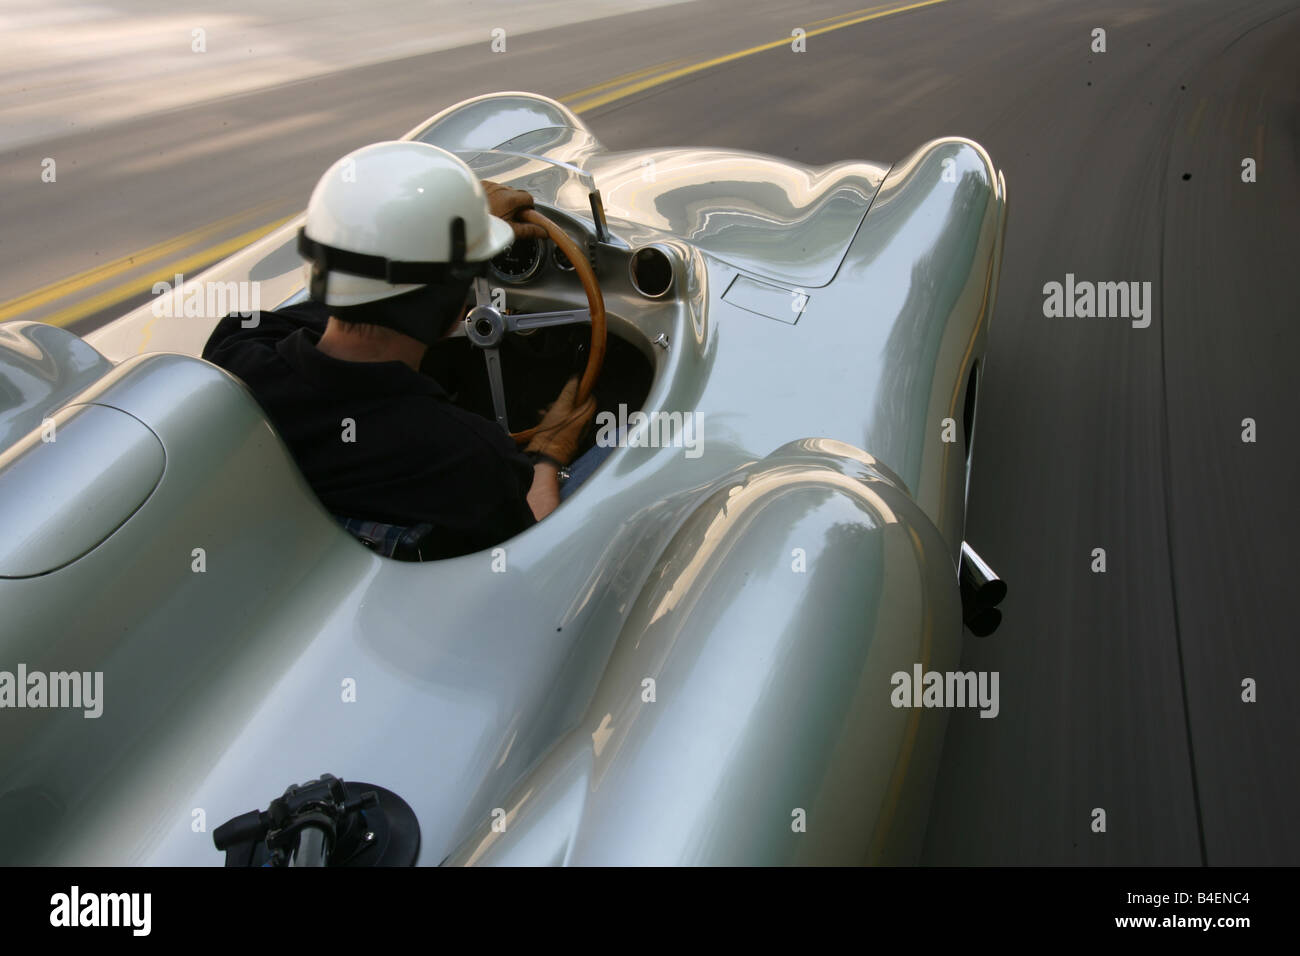 Auto Mercedes W 196 Stromlinie, modello anno 1954, vintage auto, auto racing, argento, auto d'epoca, anni cinquanta, cinquanta, racing, motore spo Foto Stock